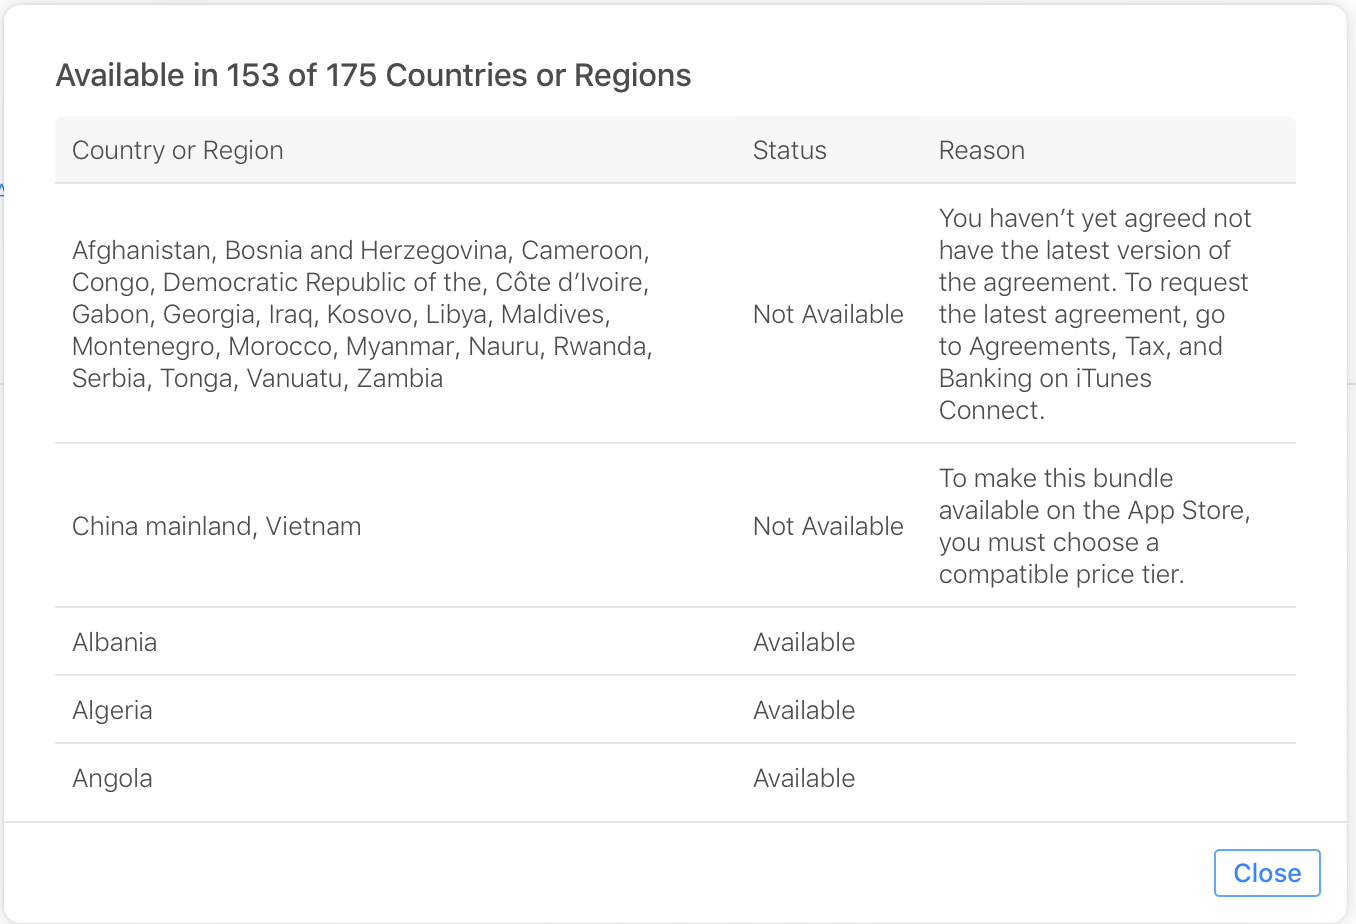 一个对话框的截屏，显示该 App 套装在 175 个国家或地区中的 153 个国家或地区可供销售。